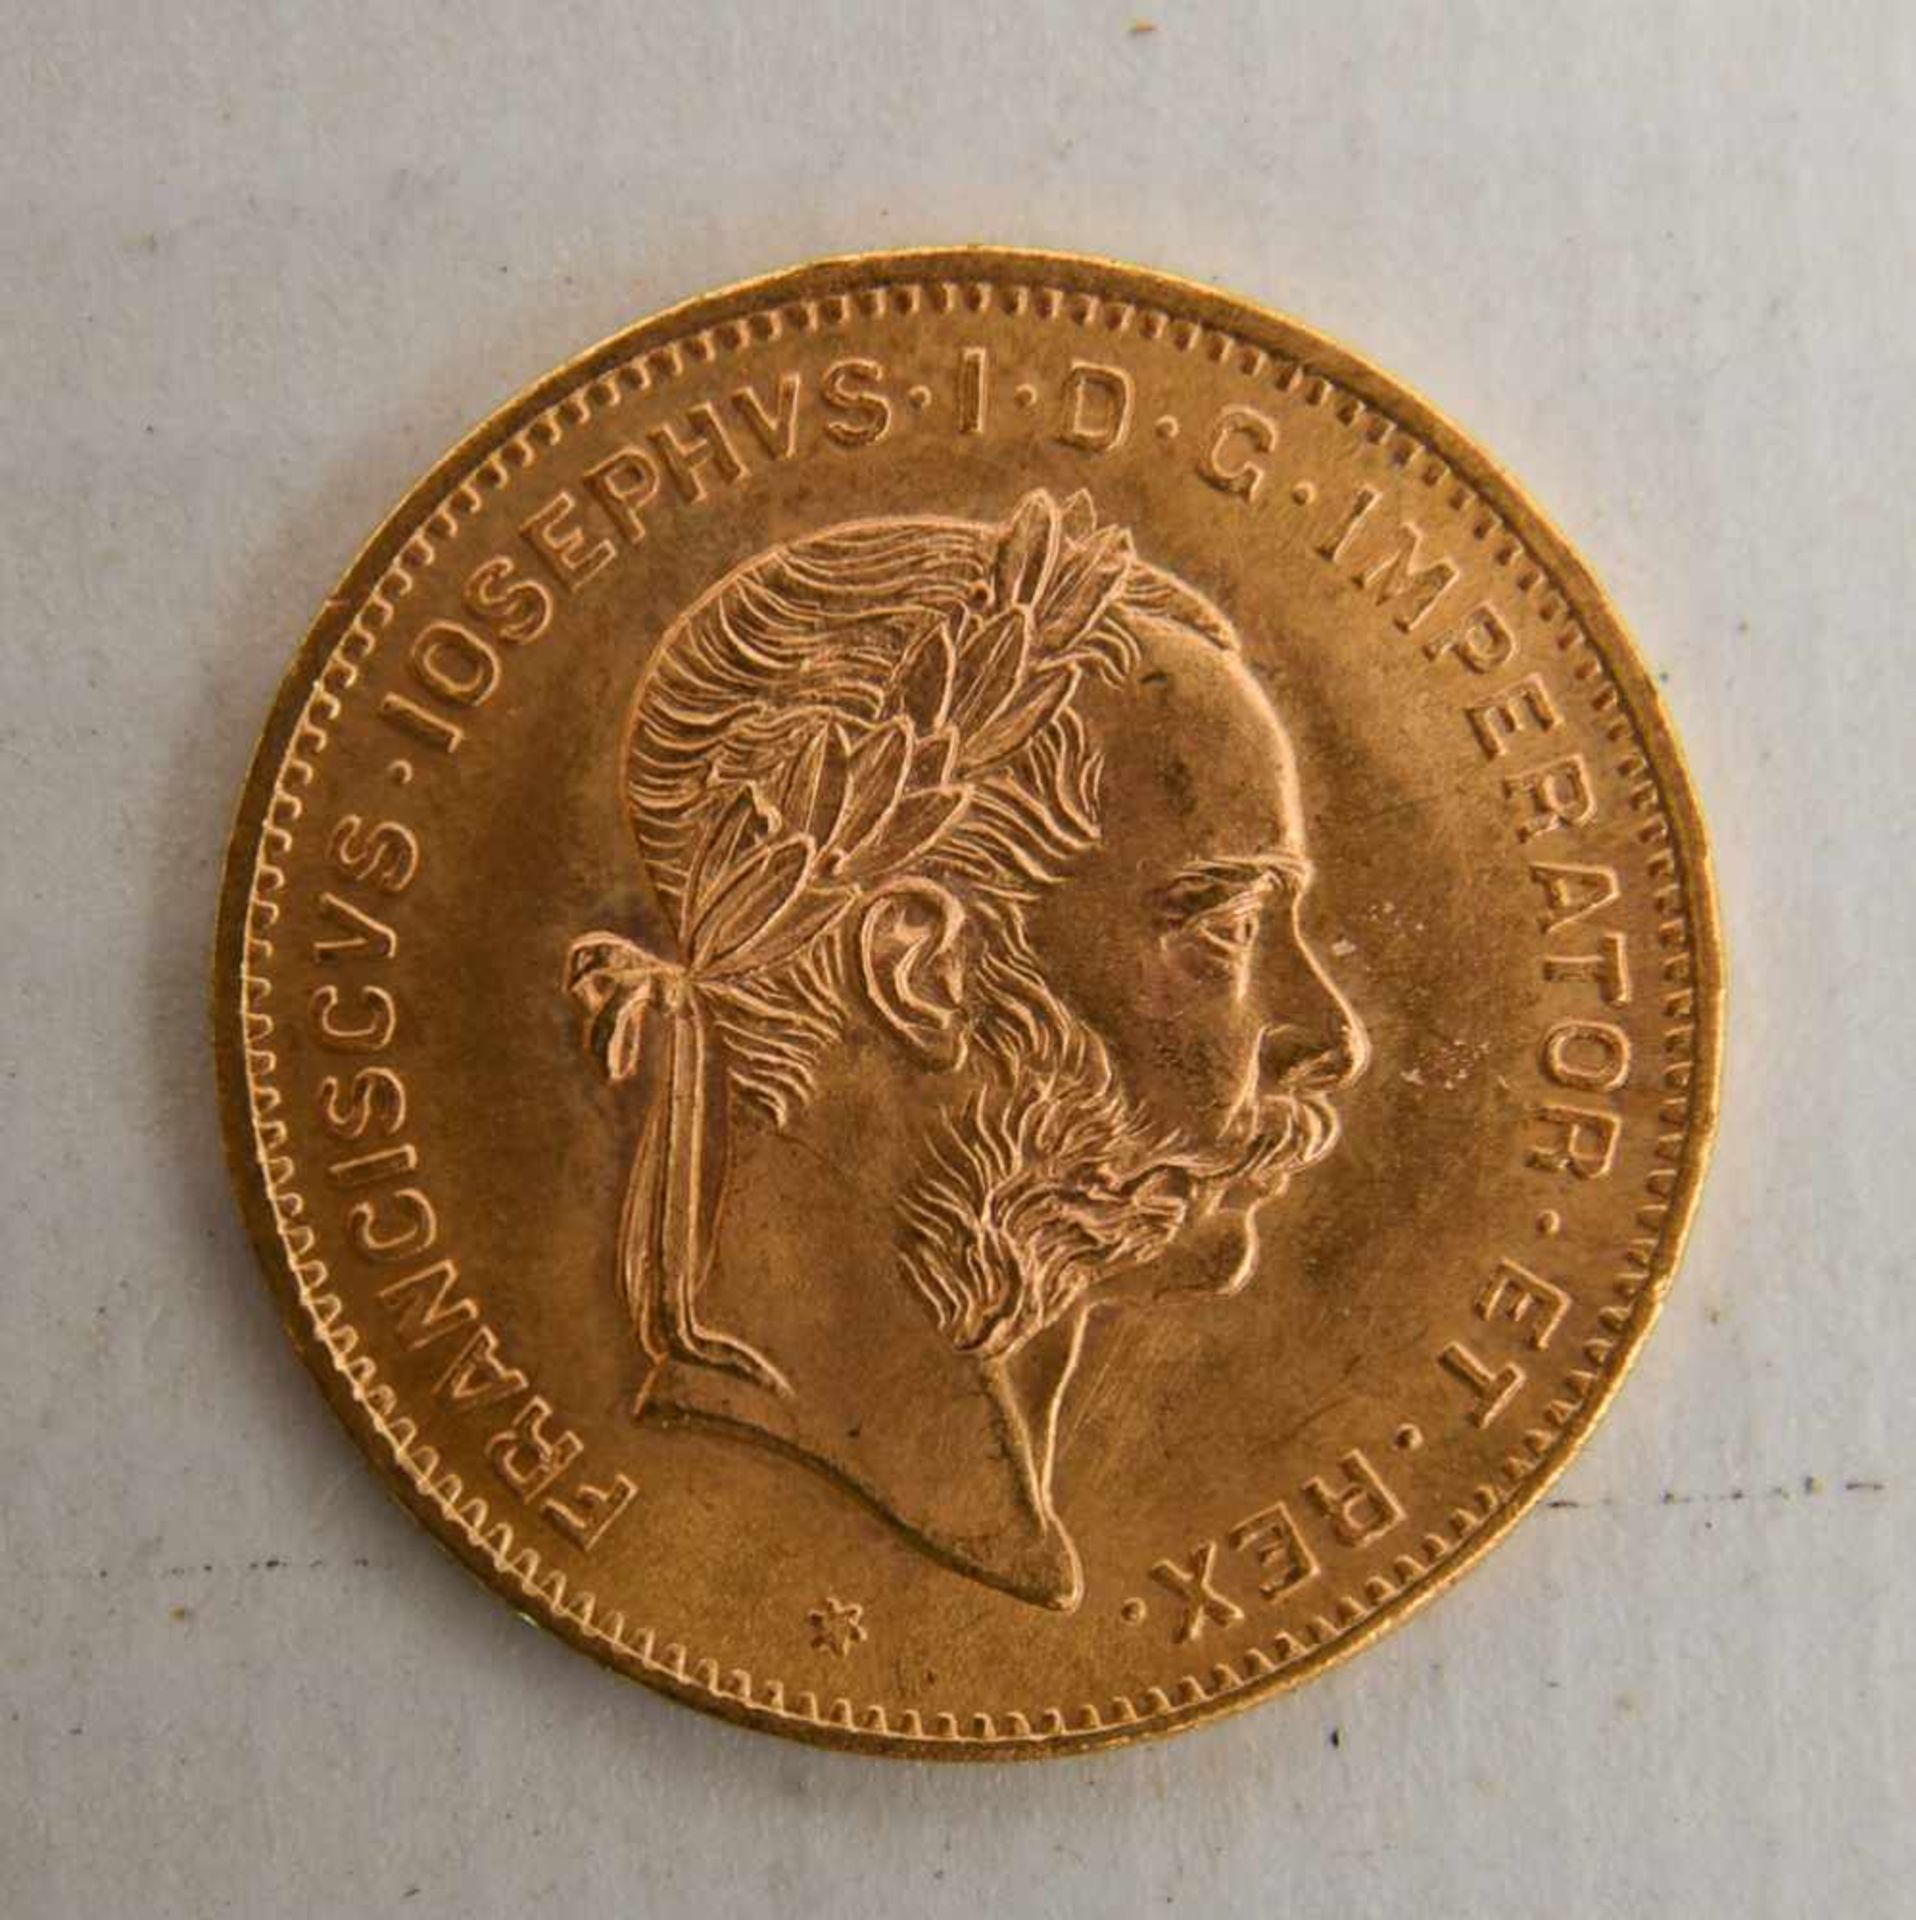 GOLDMÜNZEN KONVOLUT, Dukaten und Florin, 19. und. 20. Jahrhundert (3) 6 Münzen Konvolut bestehend - Image 6 of 9